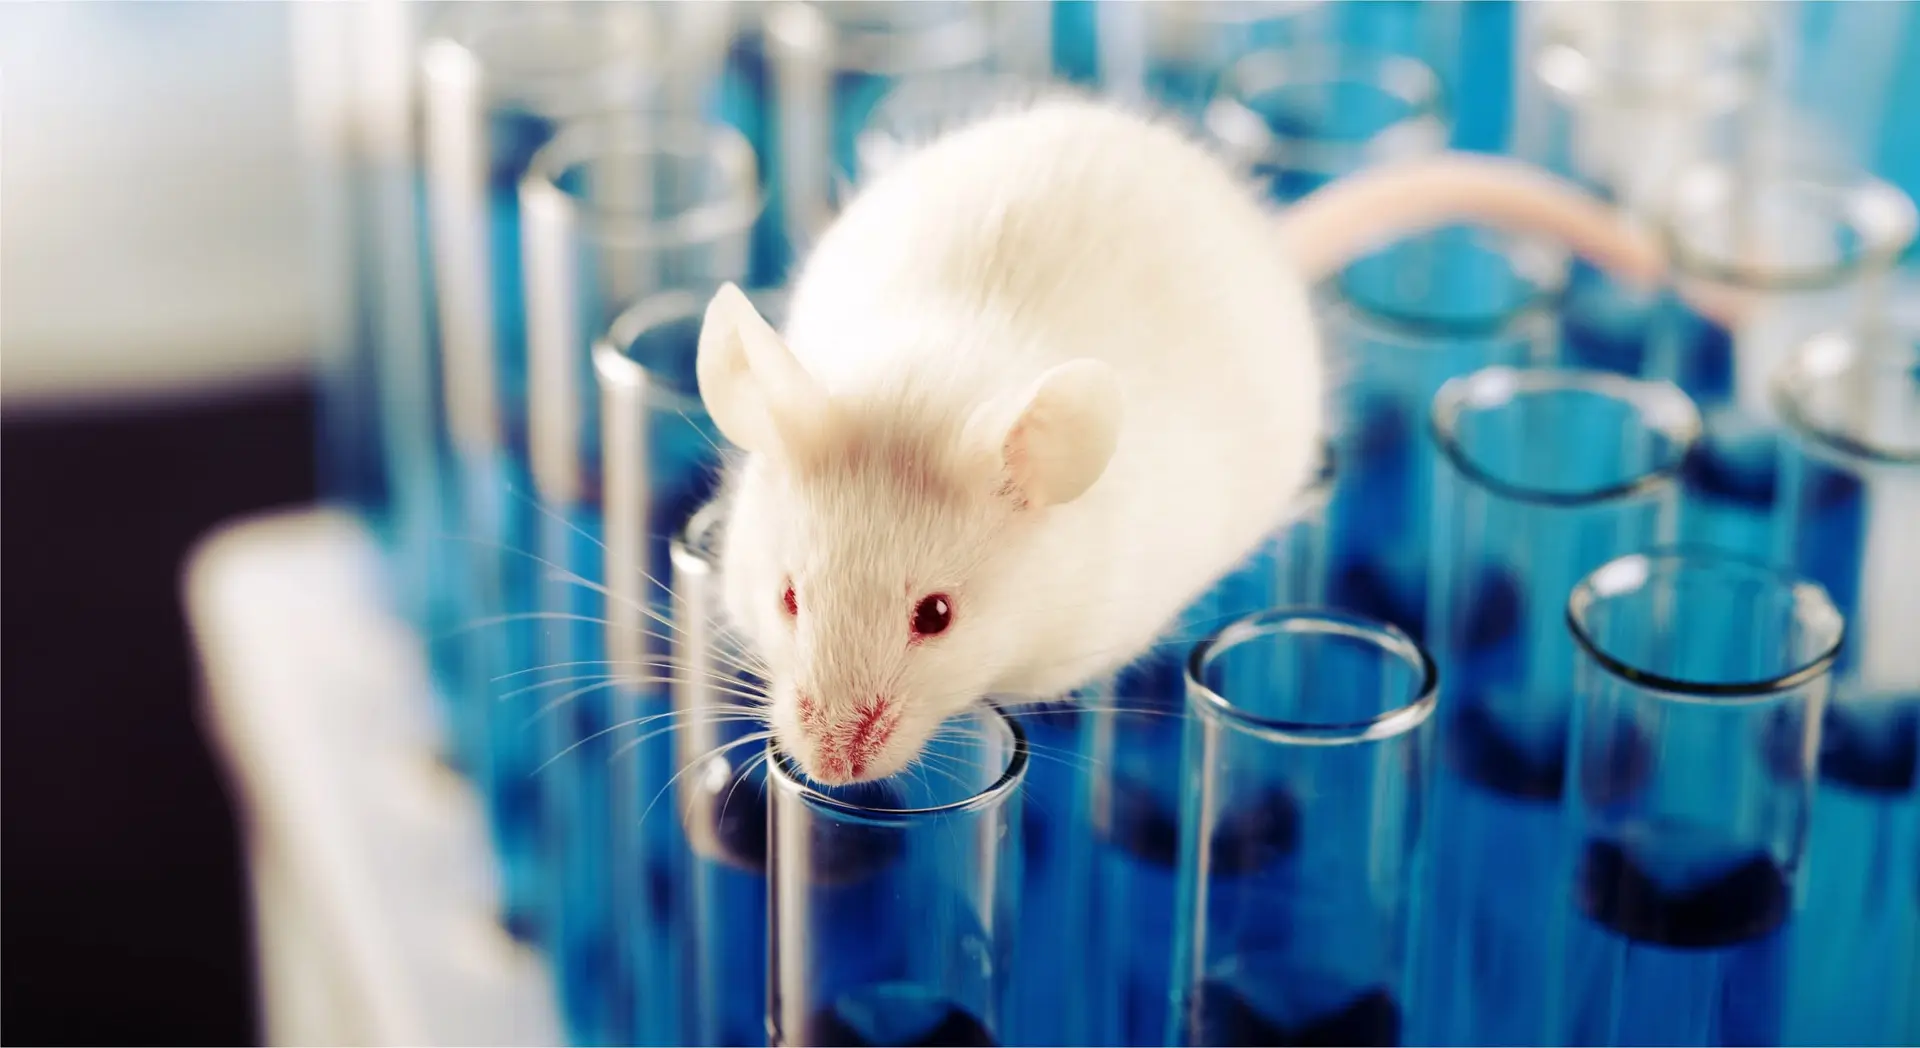 2018.09 brain injury mice testing